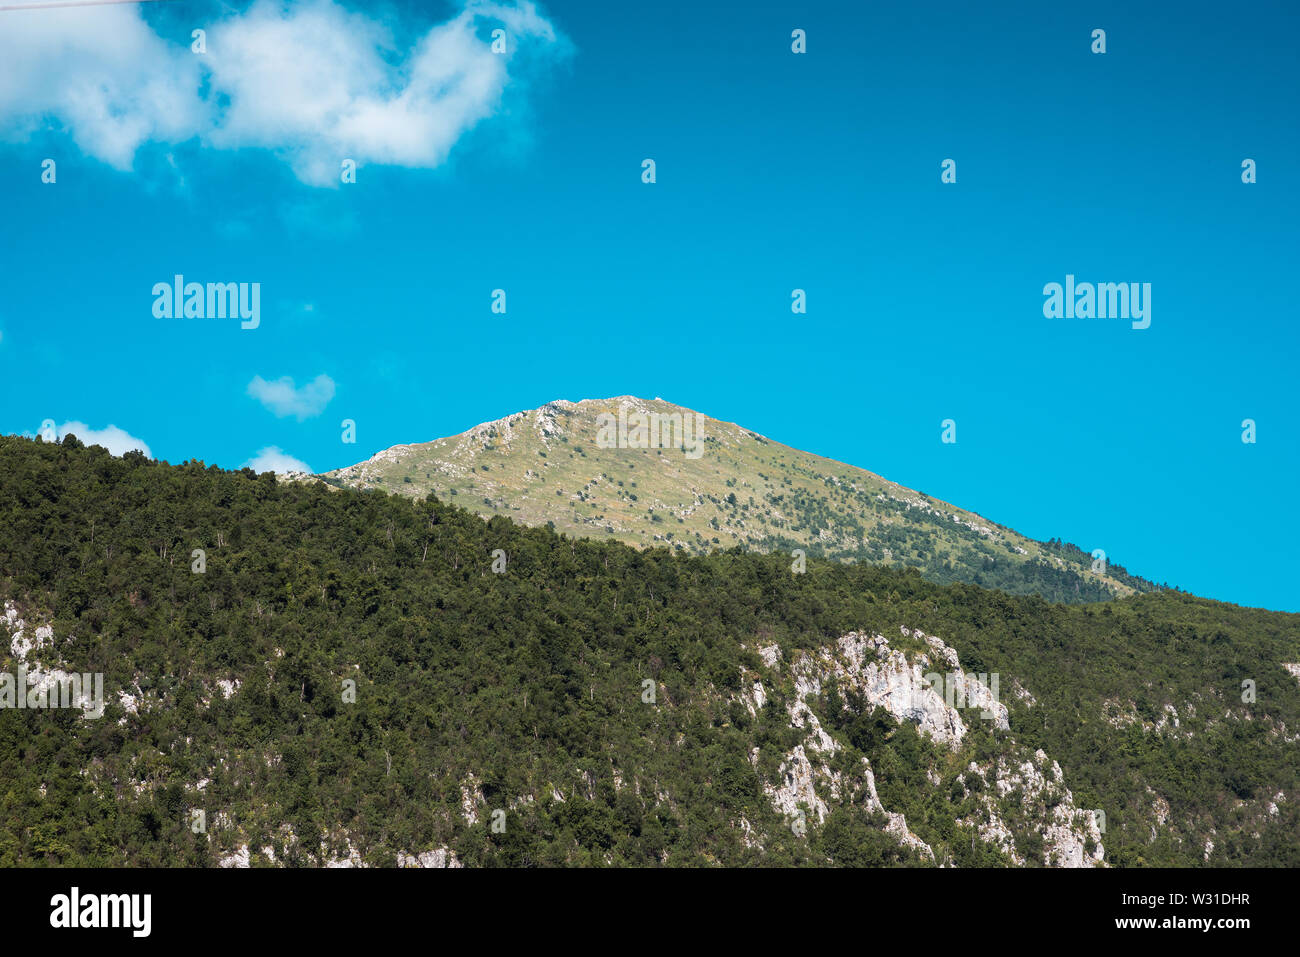 Artan mountain pyramidal peak view from valley Stock Photo